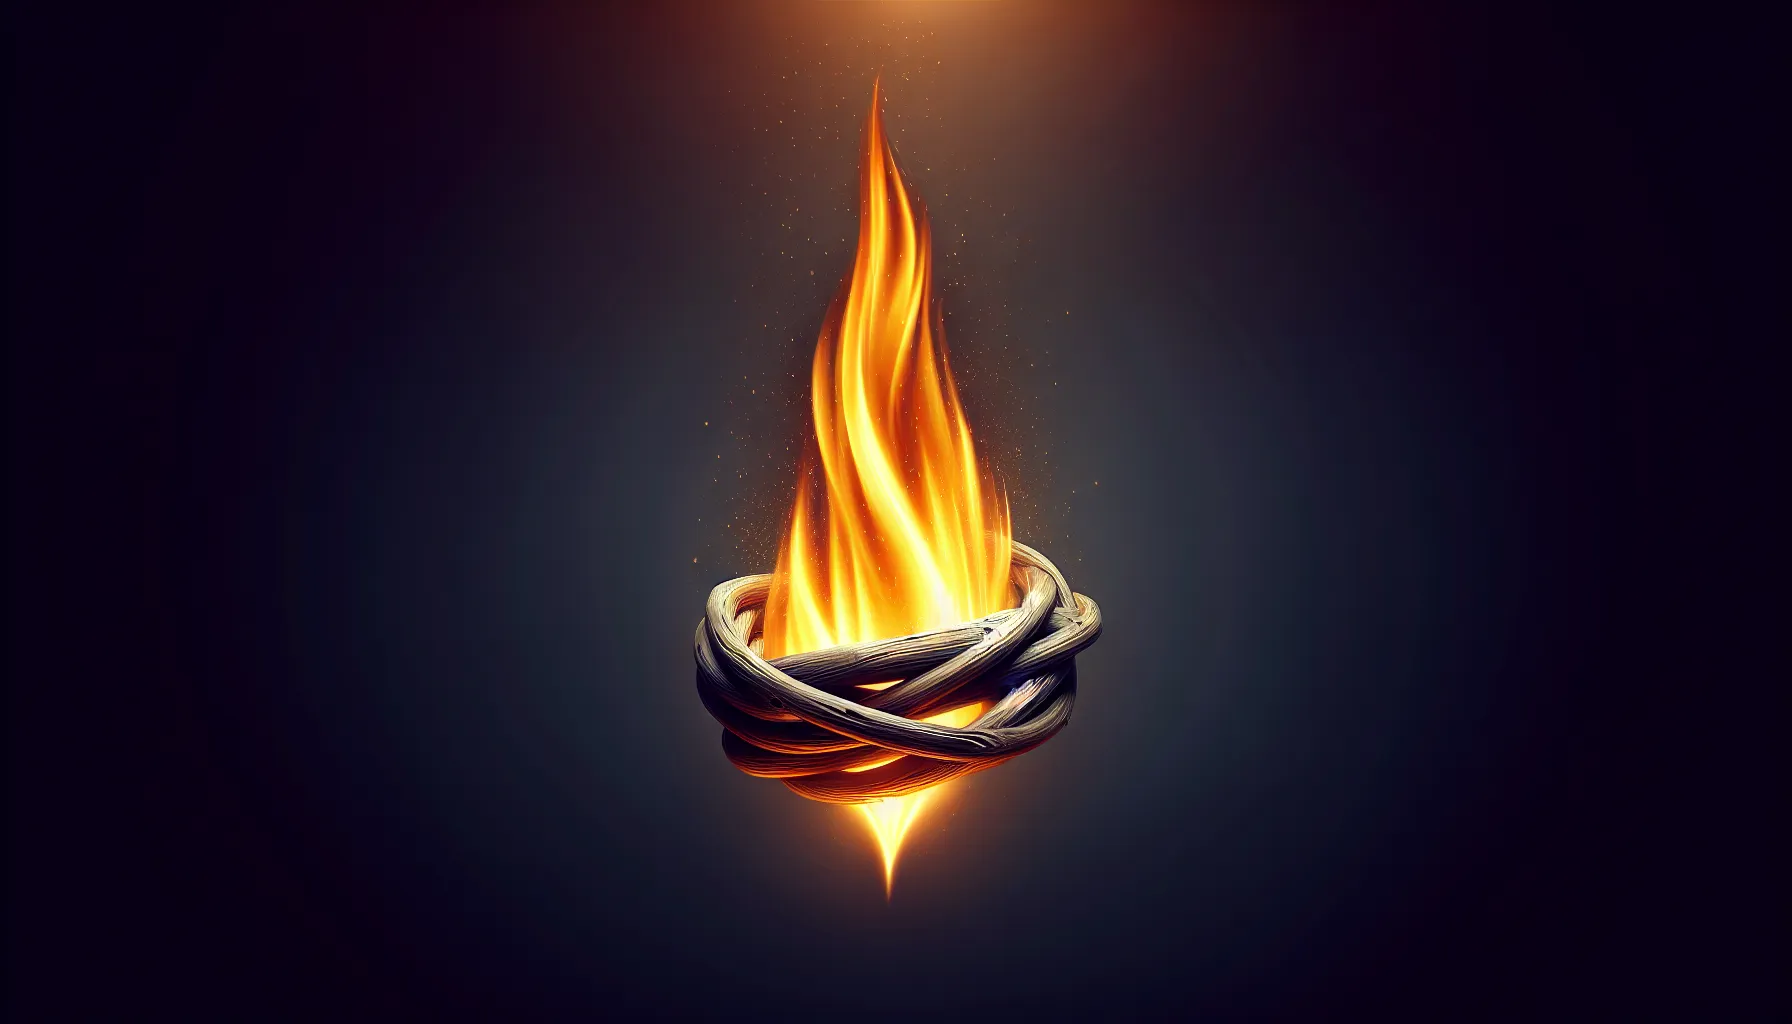 Una ilustración de una llama encendida que simboliza el concepto de ser un sacrificio vivo según la Biblia.